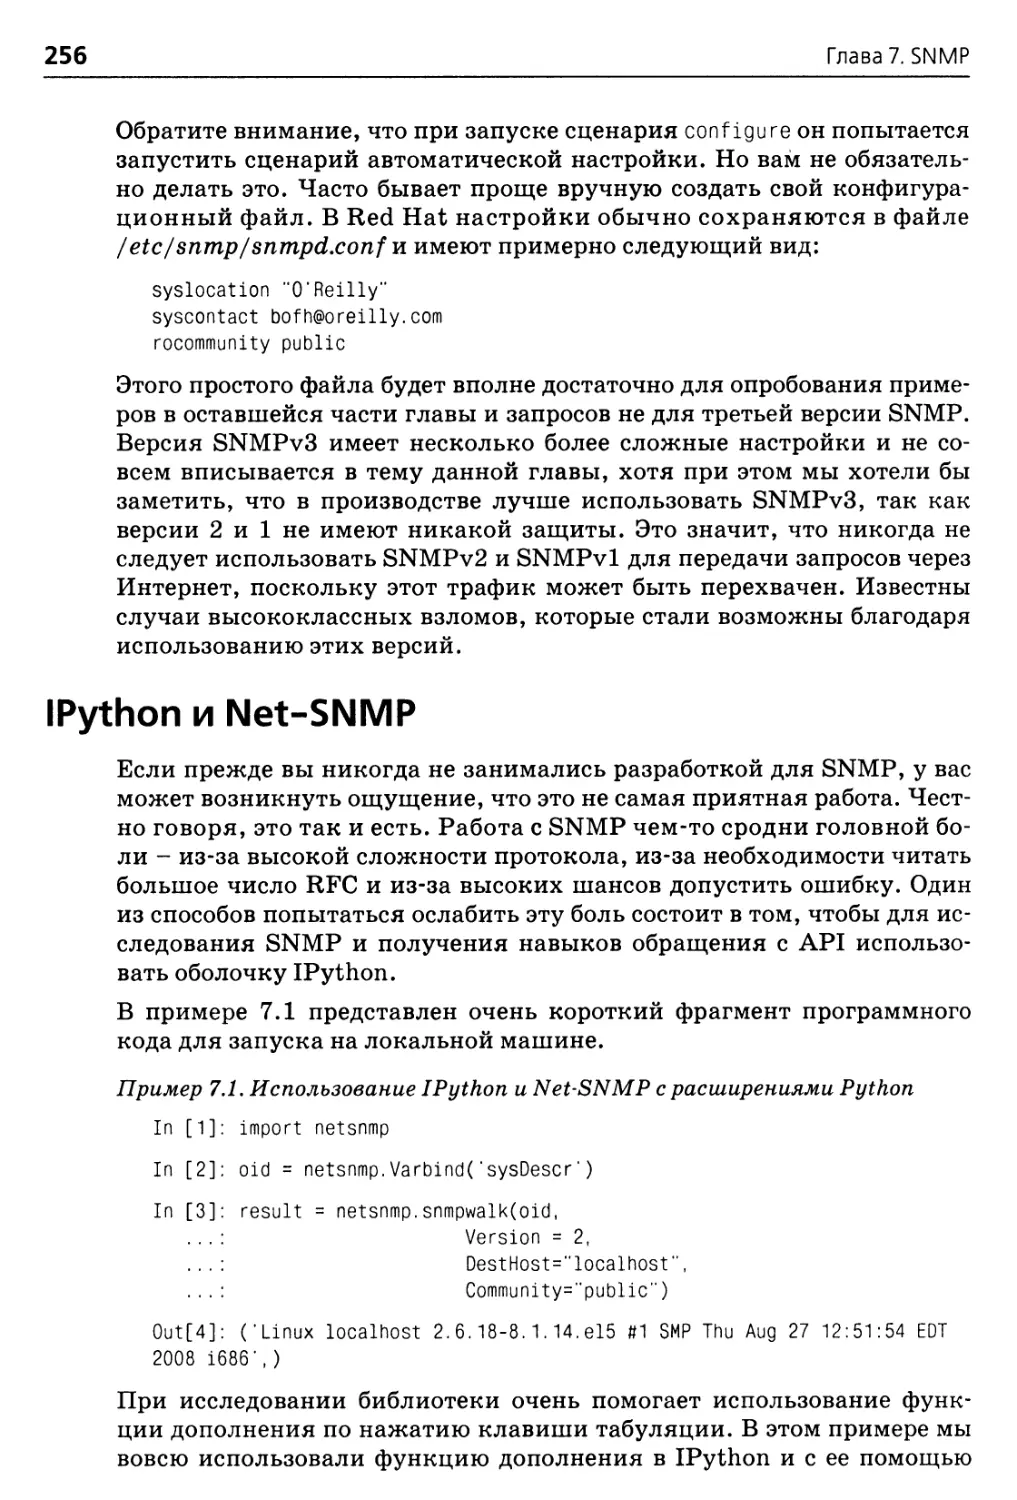 IPython и Net-SNMP